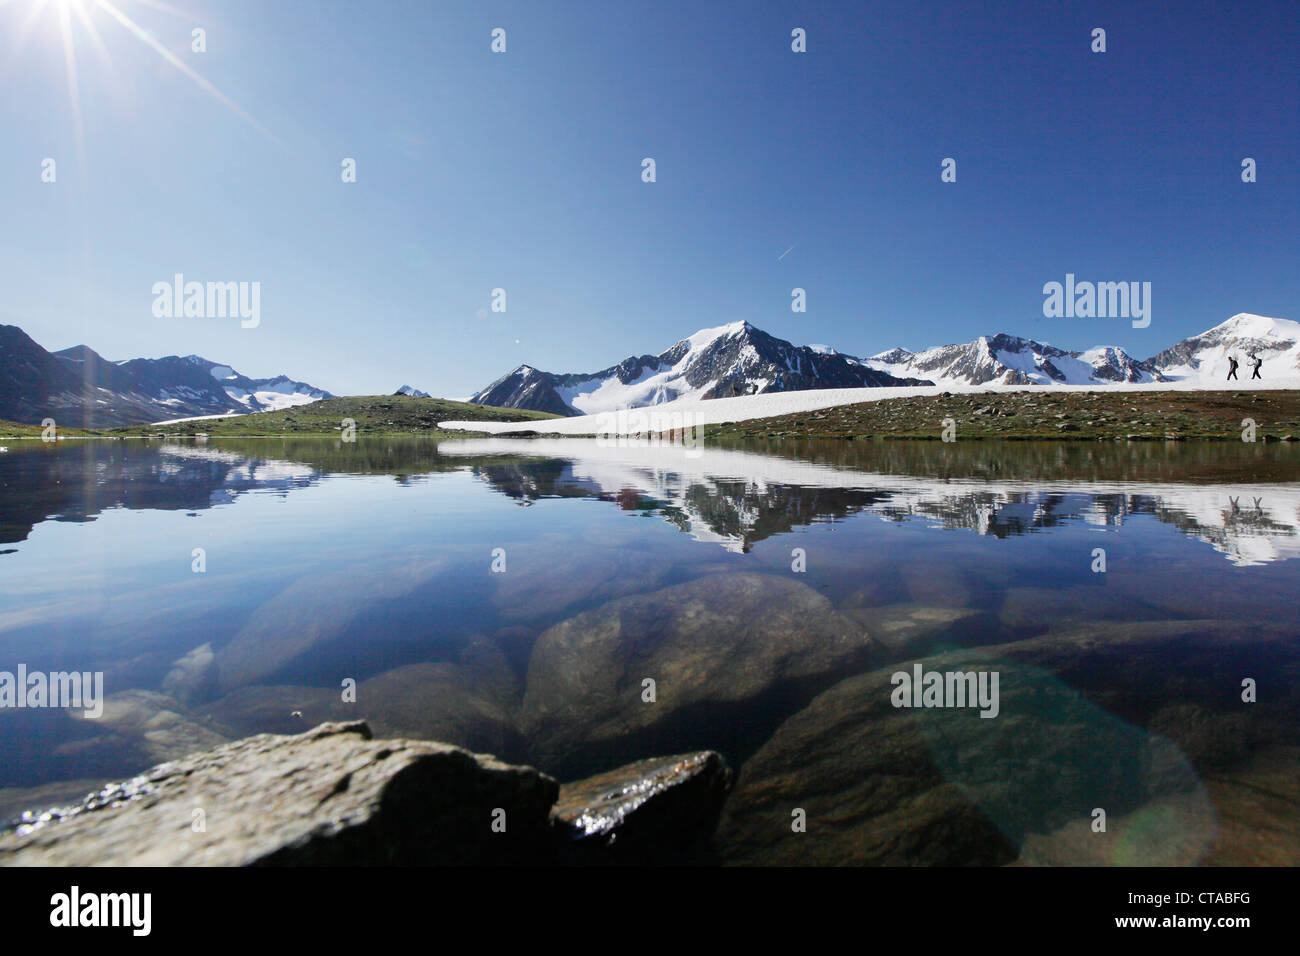 Bergsteiger am See Brizzisee, Reflexion der Berge im See, Mutmal und Similaun in den Hintergrund, Otztaler Alpen, Tirol Stockfoto